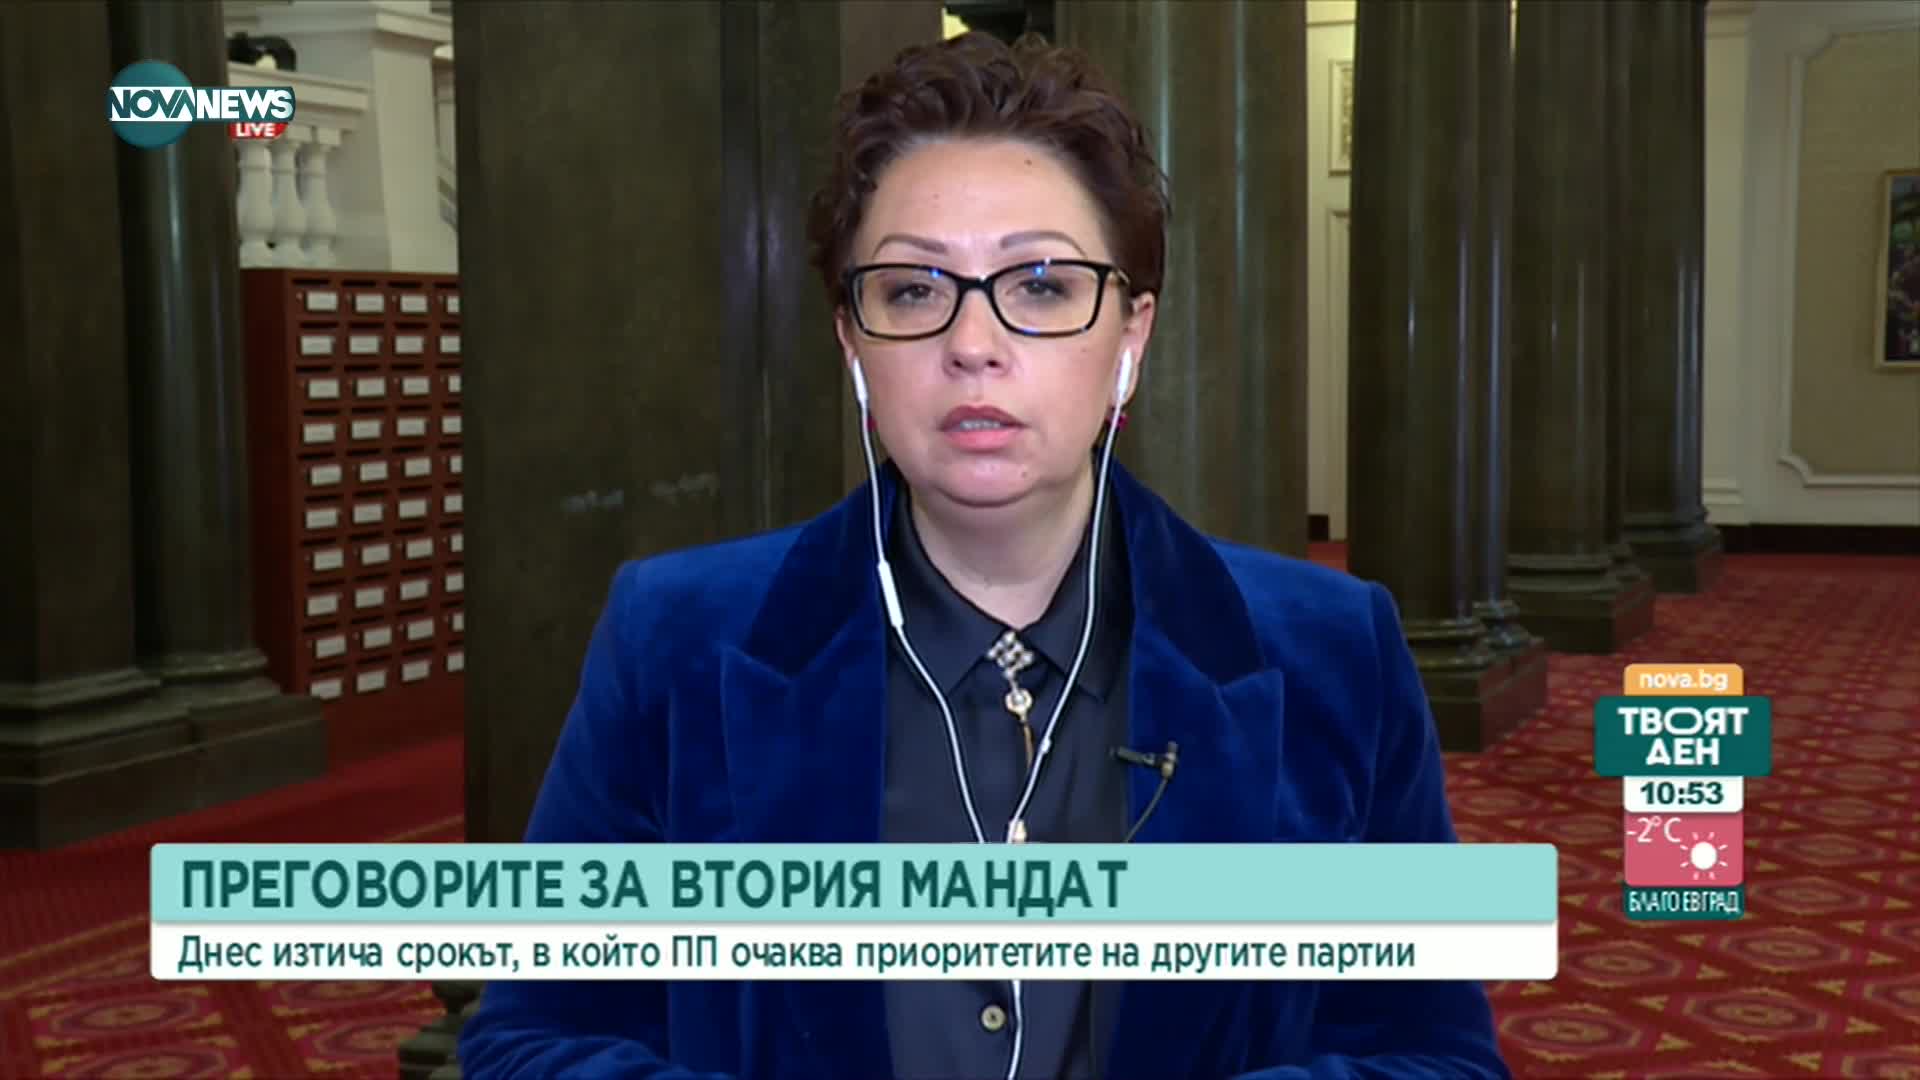 Людмила Илиева: Министрите на ПП трябва да са компетентни и почтени хора